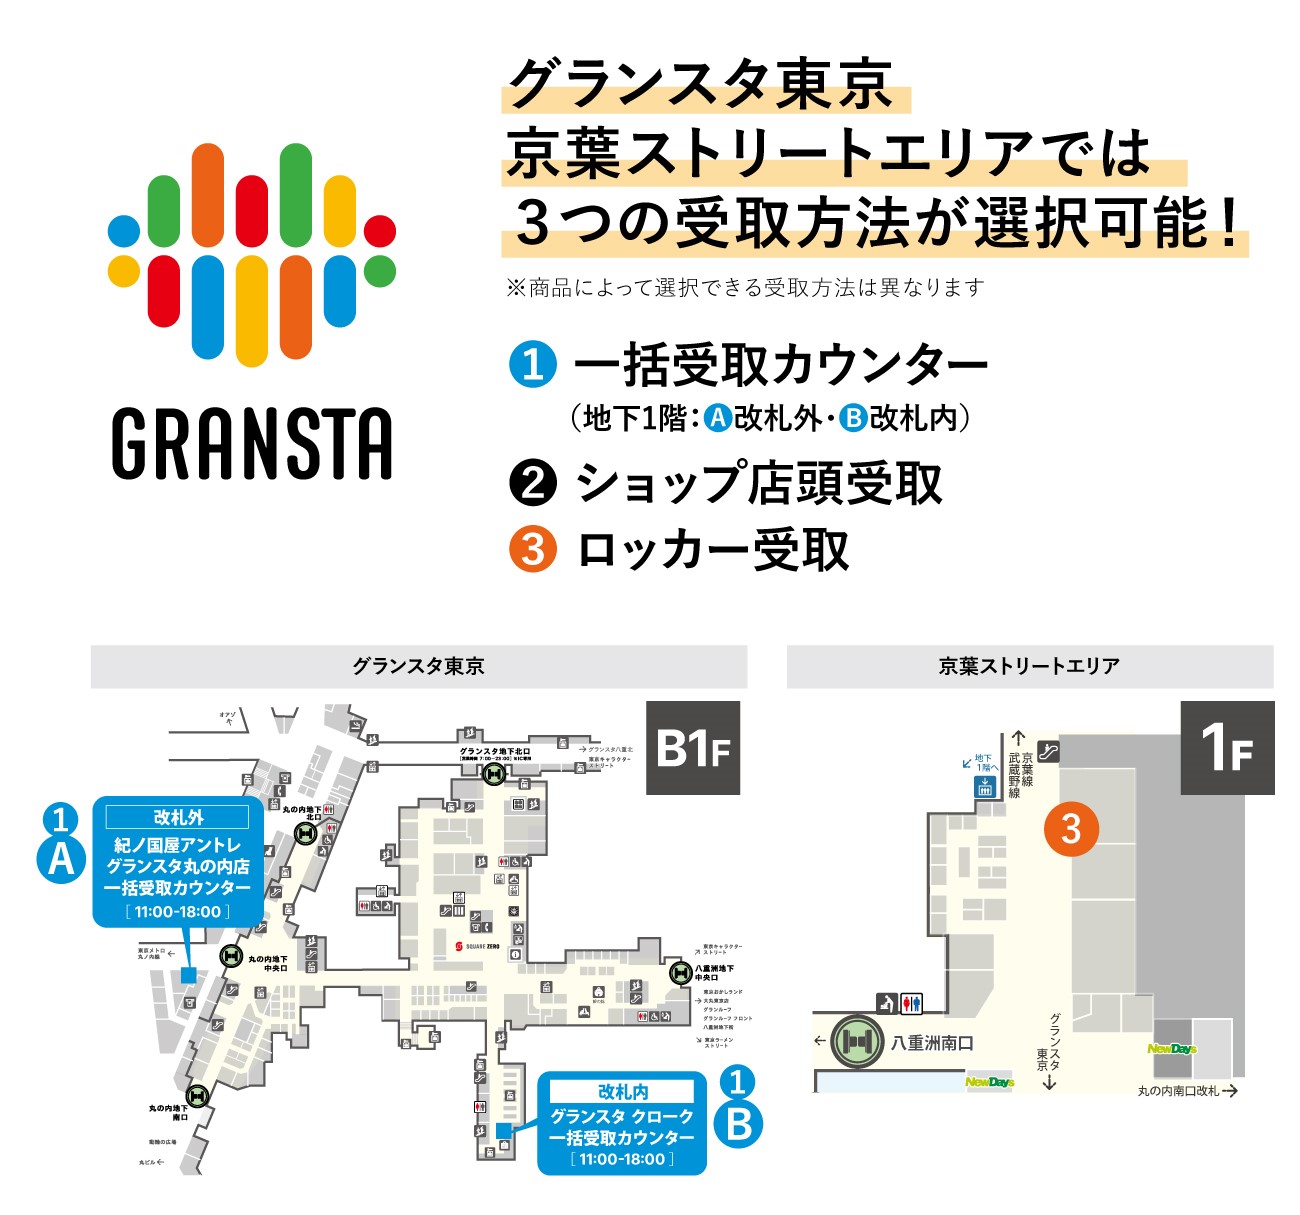 グランスタ東京 京葉ストリートエリアは3つの受取方法があります 1.一括受取カウンター 2.ショップ転用受取 3.ロッカー受取